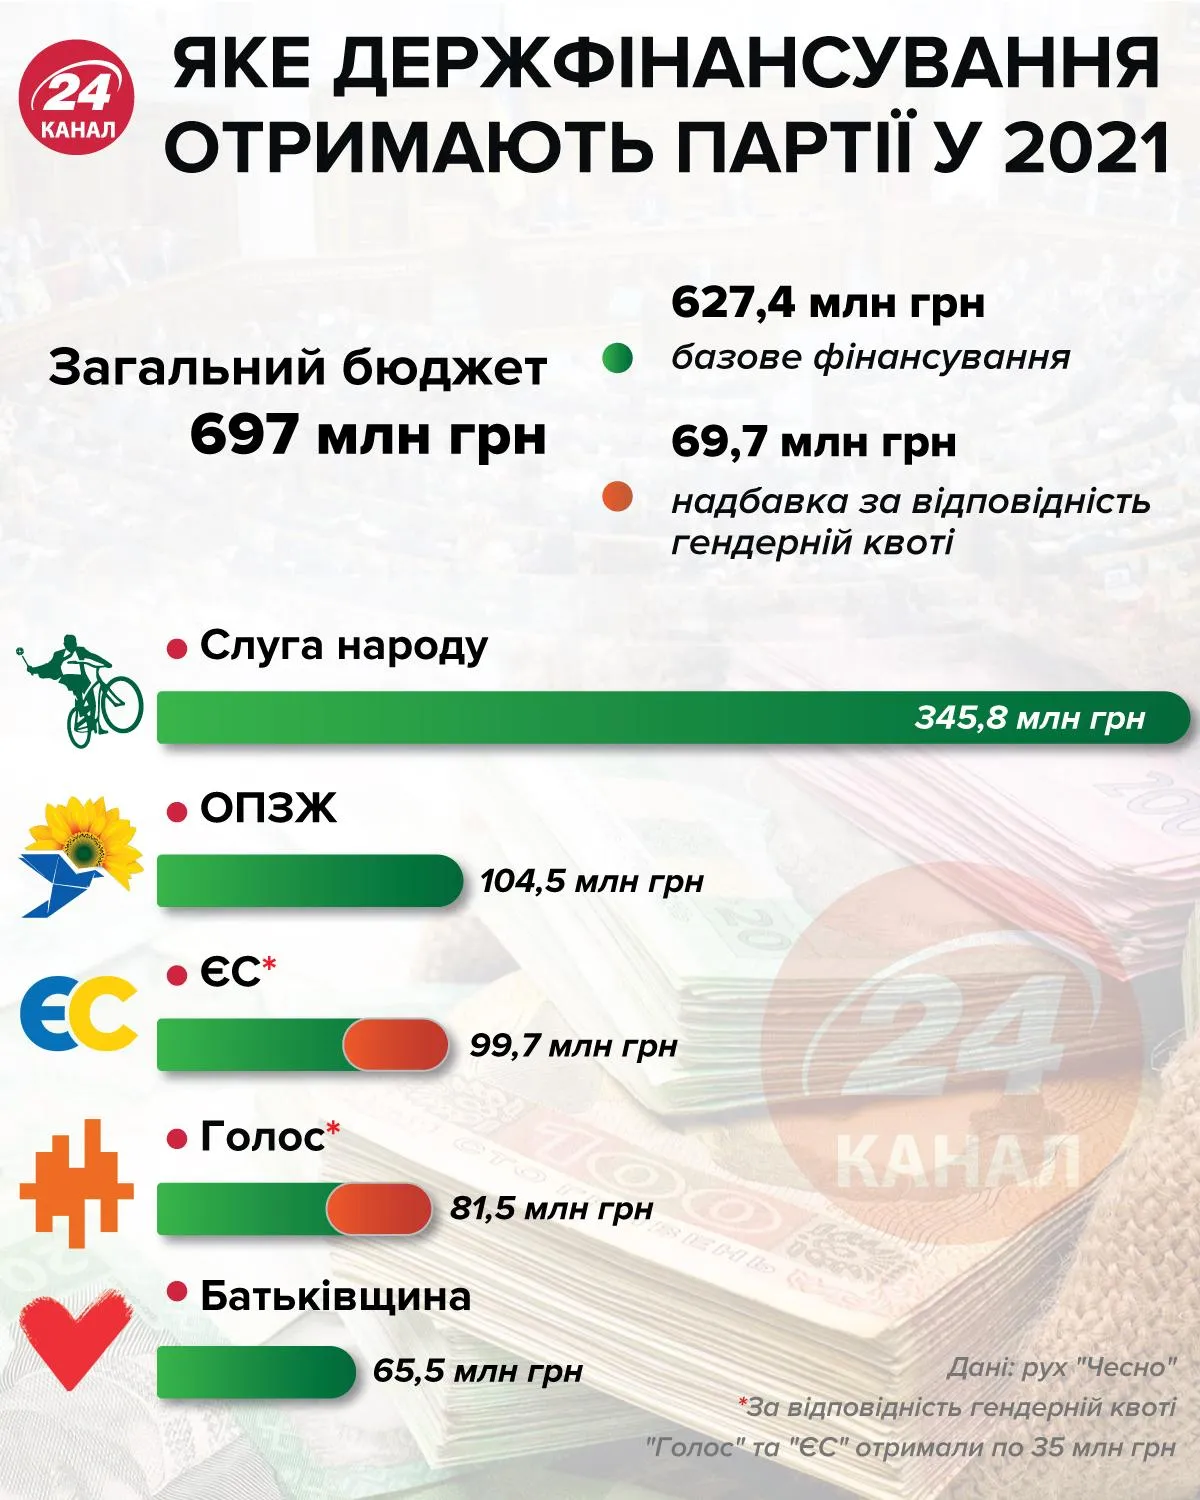 Госфинансирование партий инфографика 24 канал